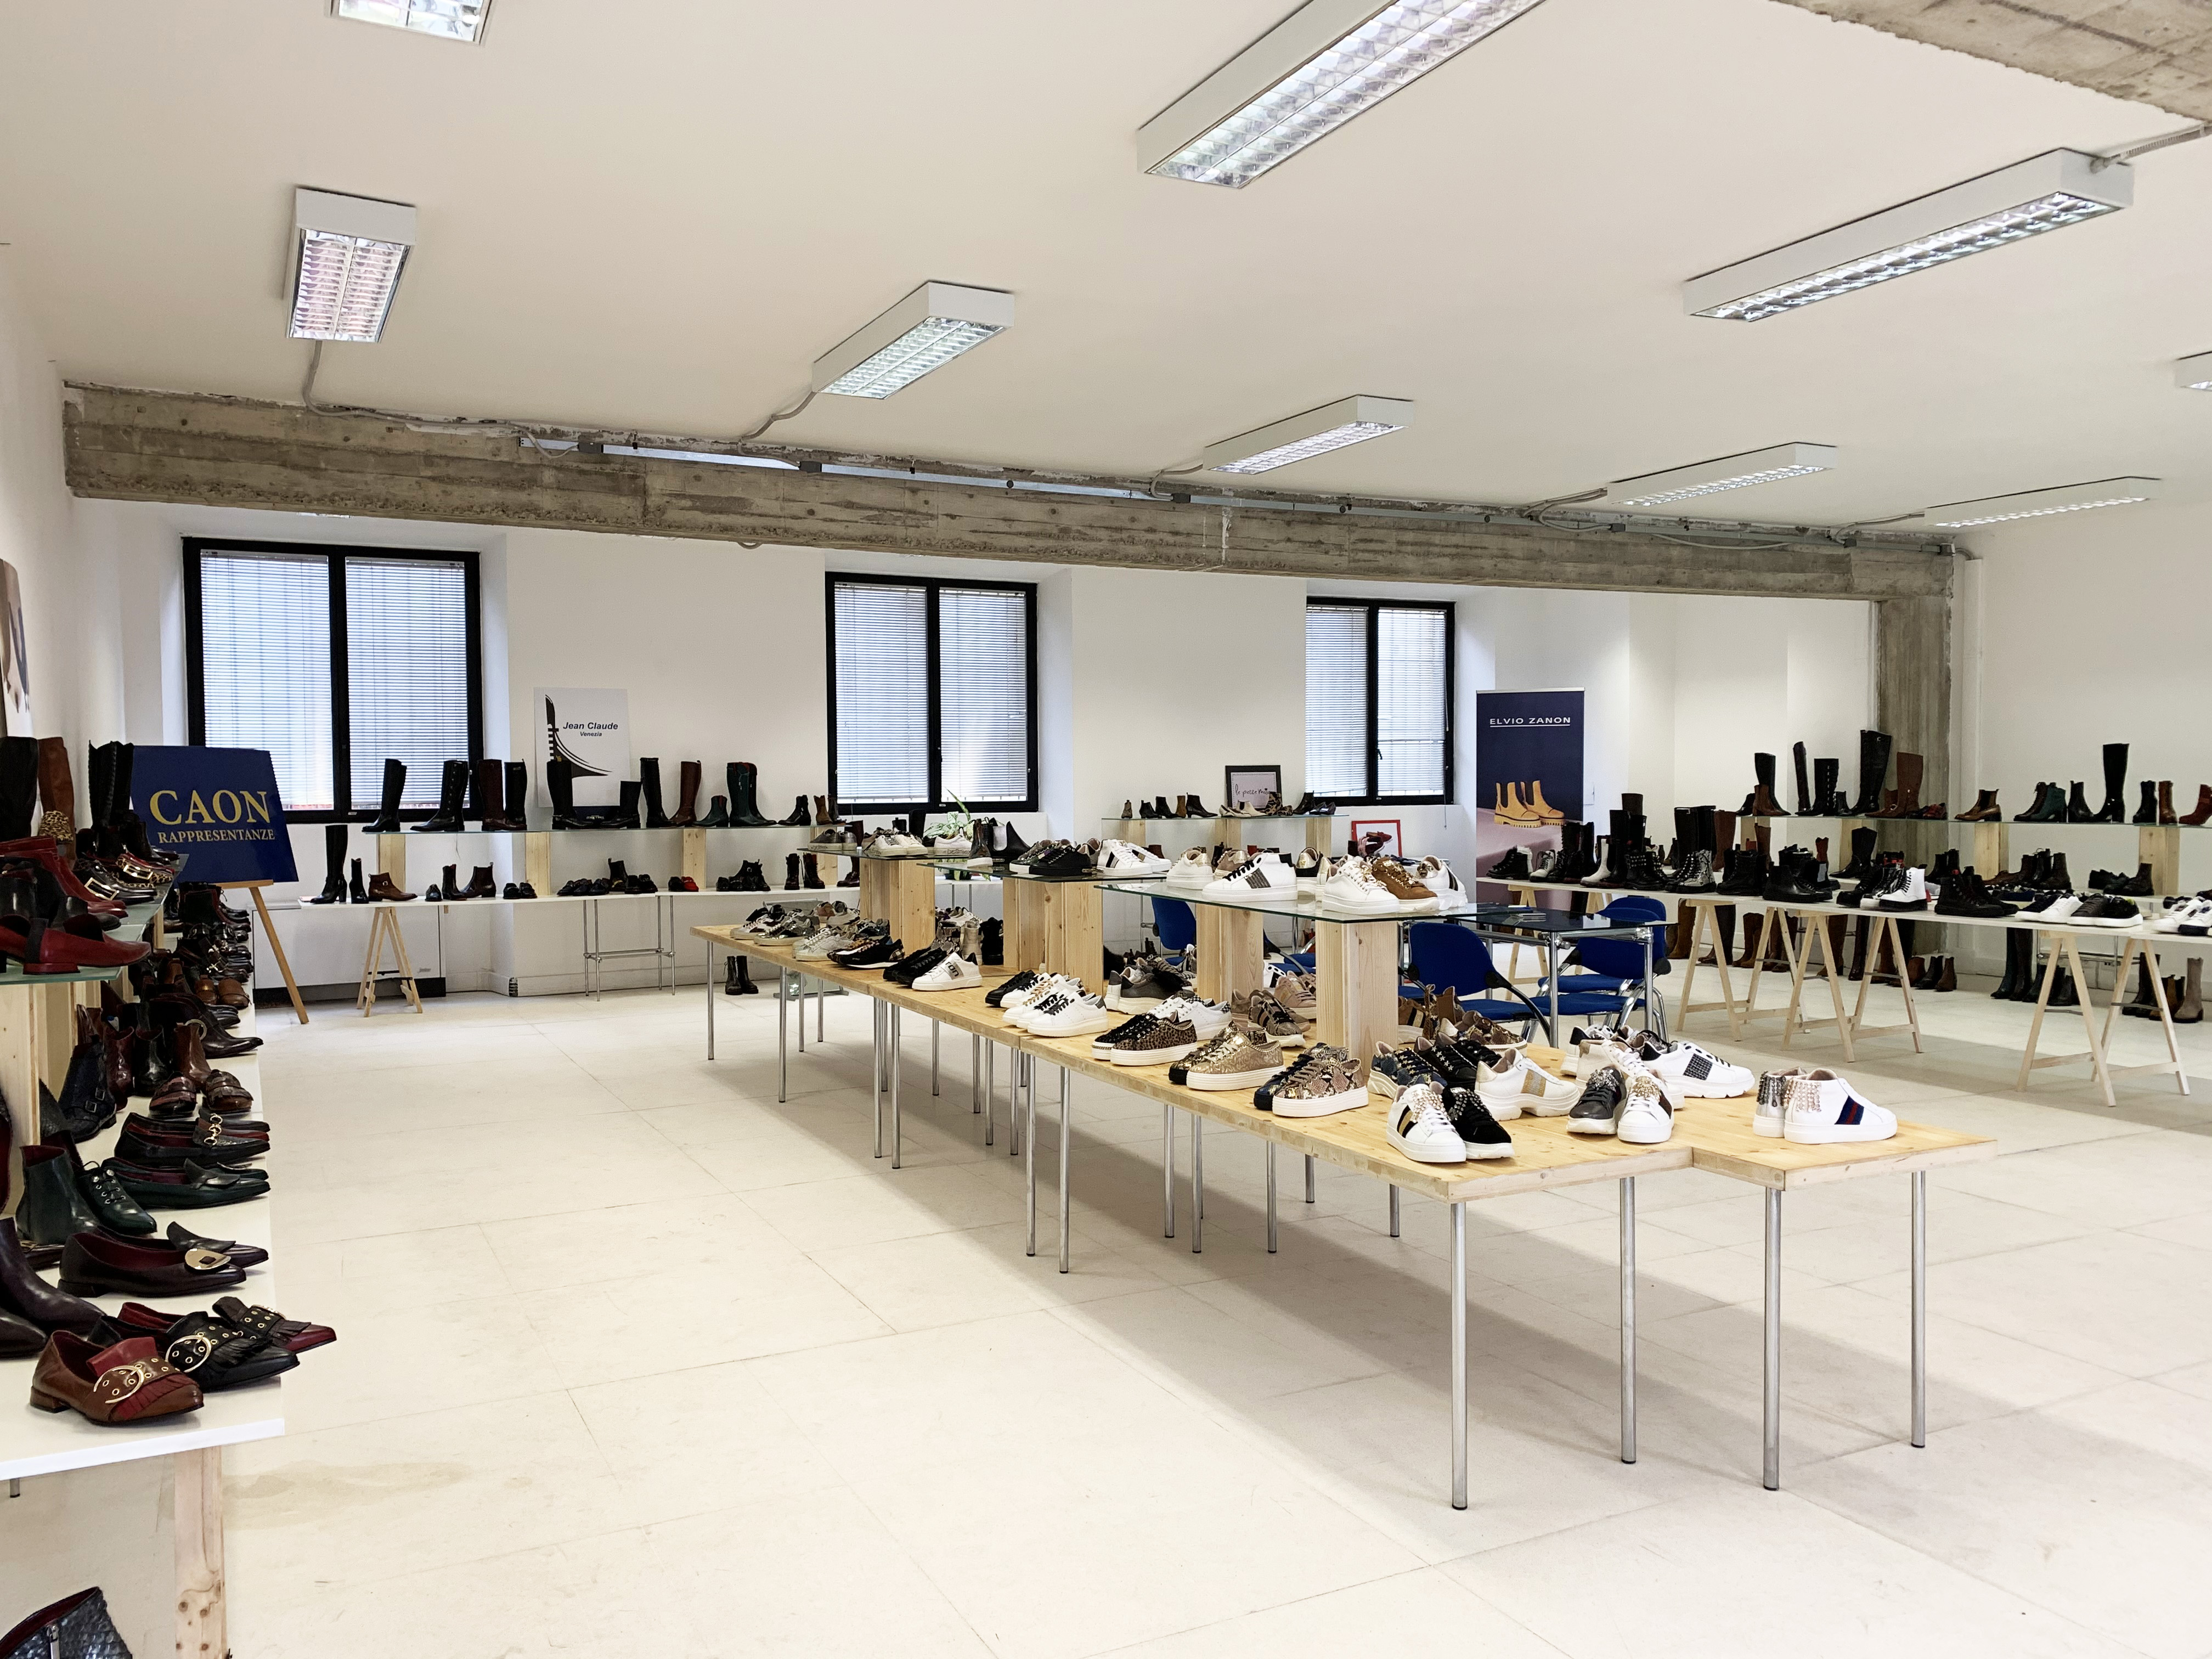 Caon Rappresentanze - temporary showroom in via Tortona 31 - 2